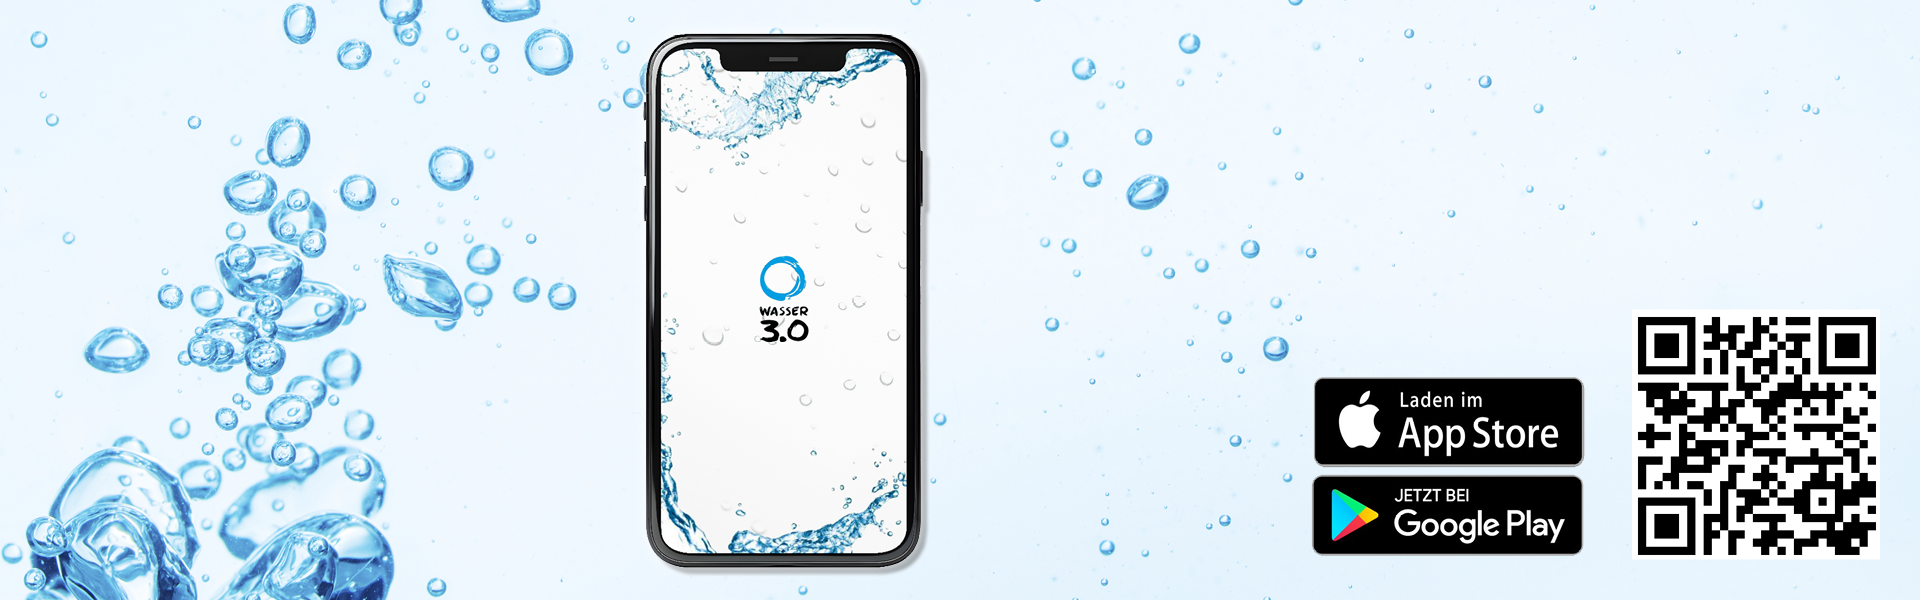 Slider Wasser 3.0 App